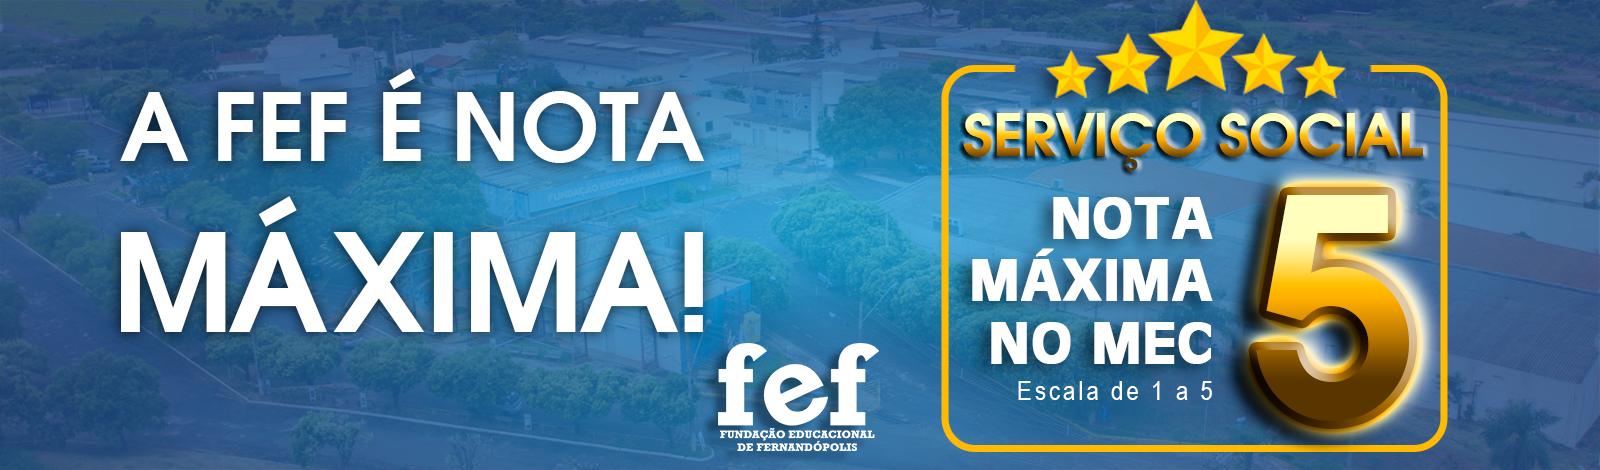 Banner Faculdades Integradas de Fernandópolis - Serviço Social da FEF é nota 5 no MEC!